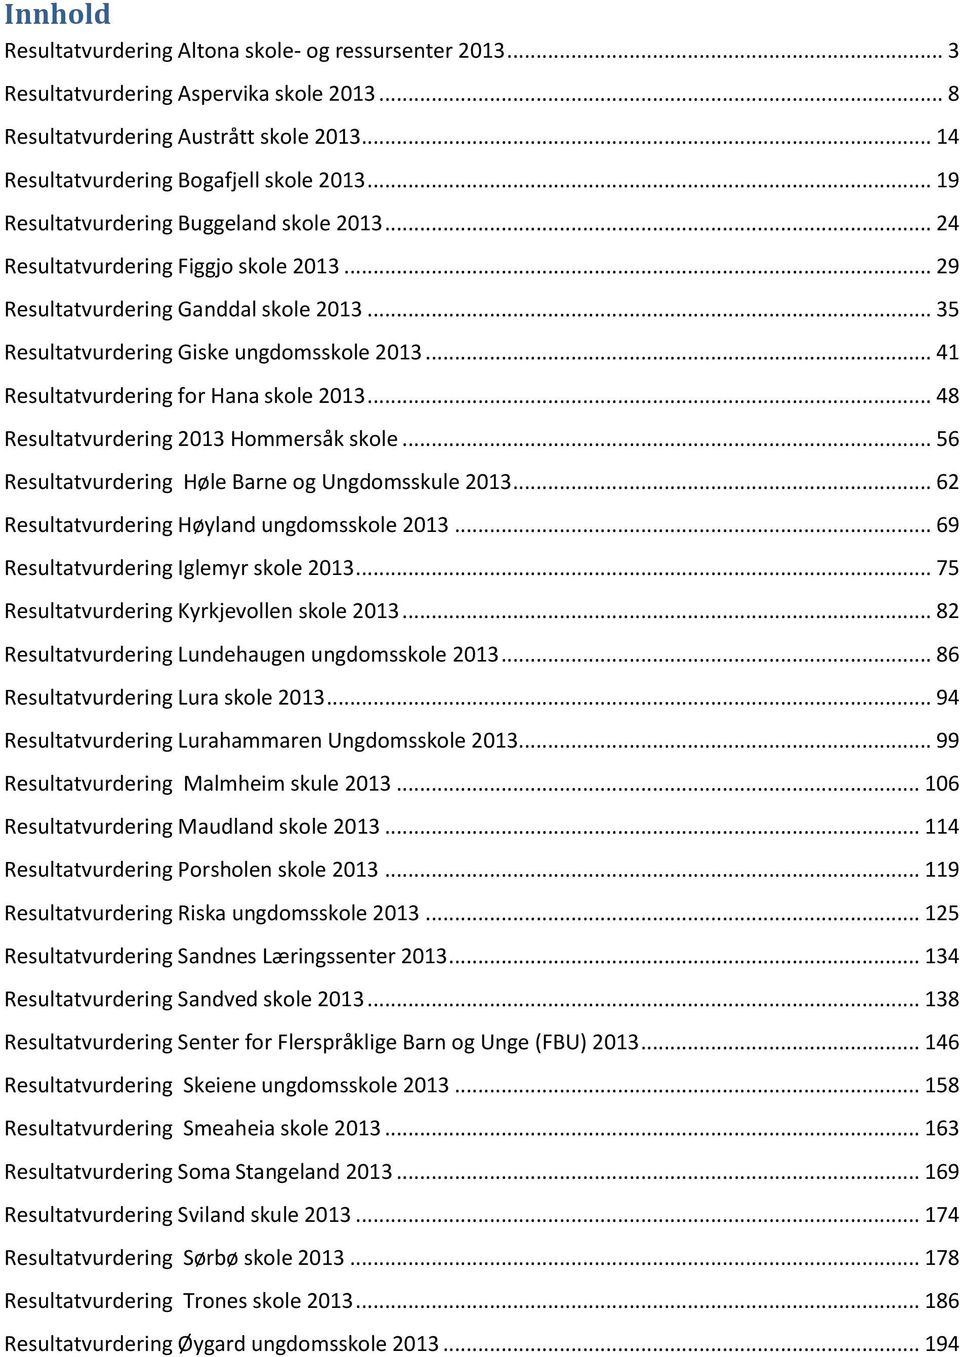 .. 41 Resultatvurdering for Hana skole 2013... 48 Resultatvurdering 2013 Hommersåk skole... 56 Resultatvurdering Høle Barne og Ungdomsskule 2013... 62 Resultatvurdering Høyland ungdomsskole 2013.